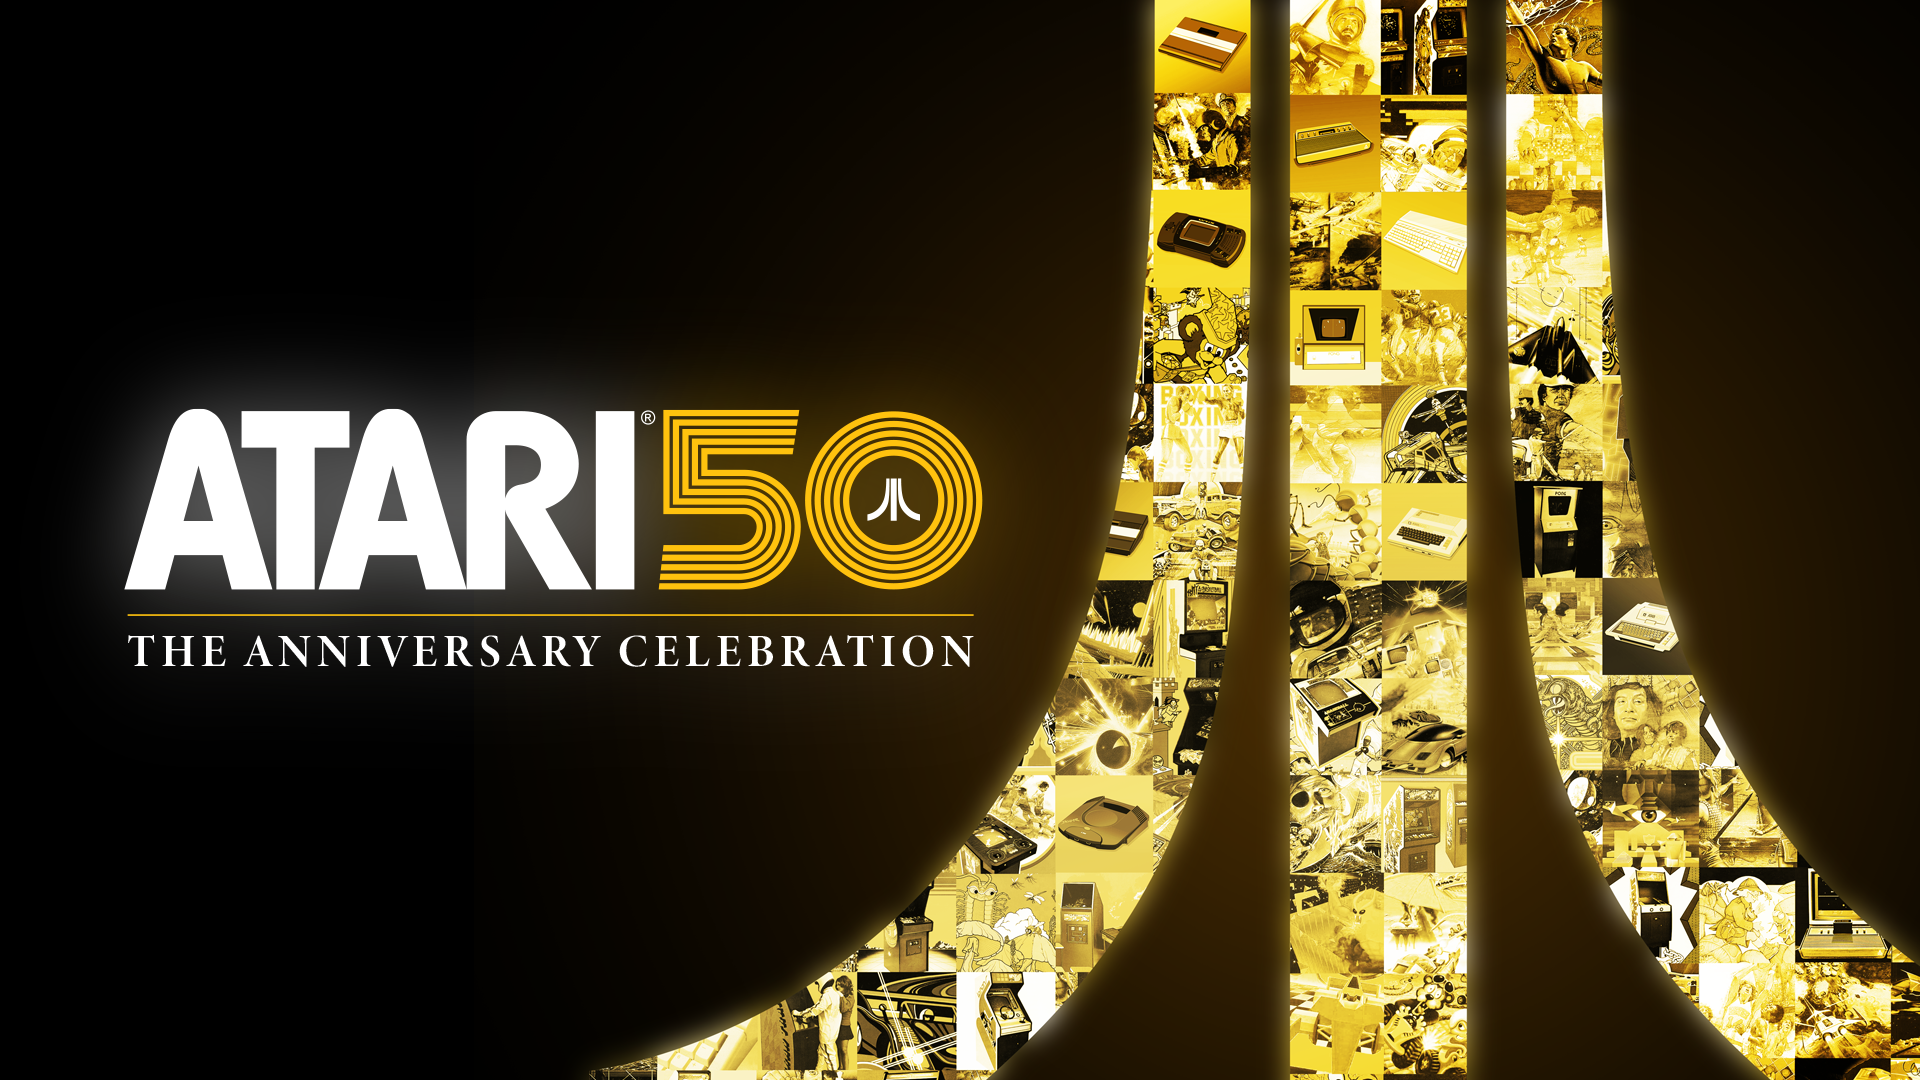 Atari 50 The Anniversary Celebration: una fiesta retro con más de 90 juegos clásicos